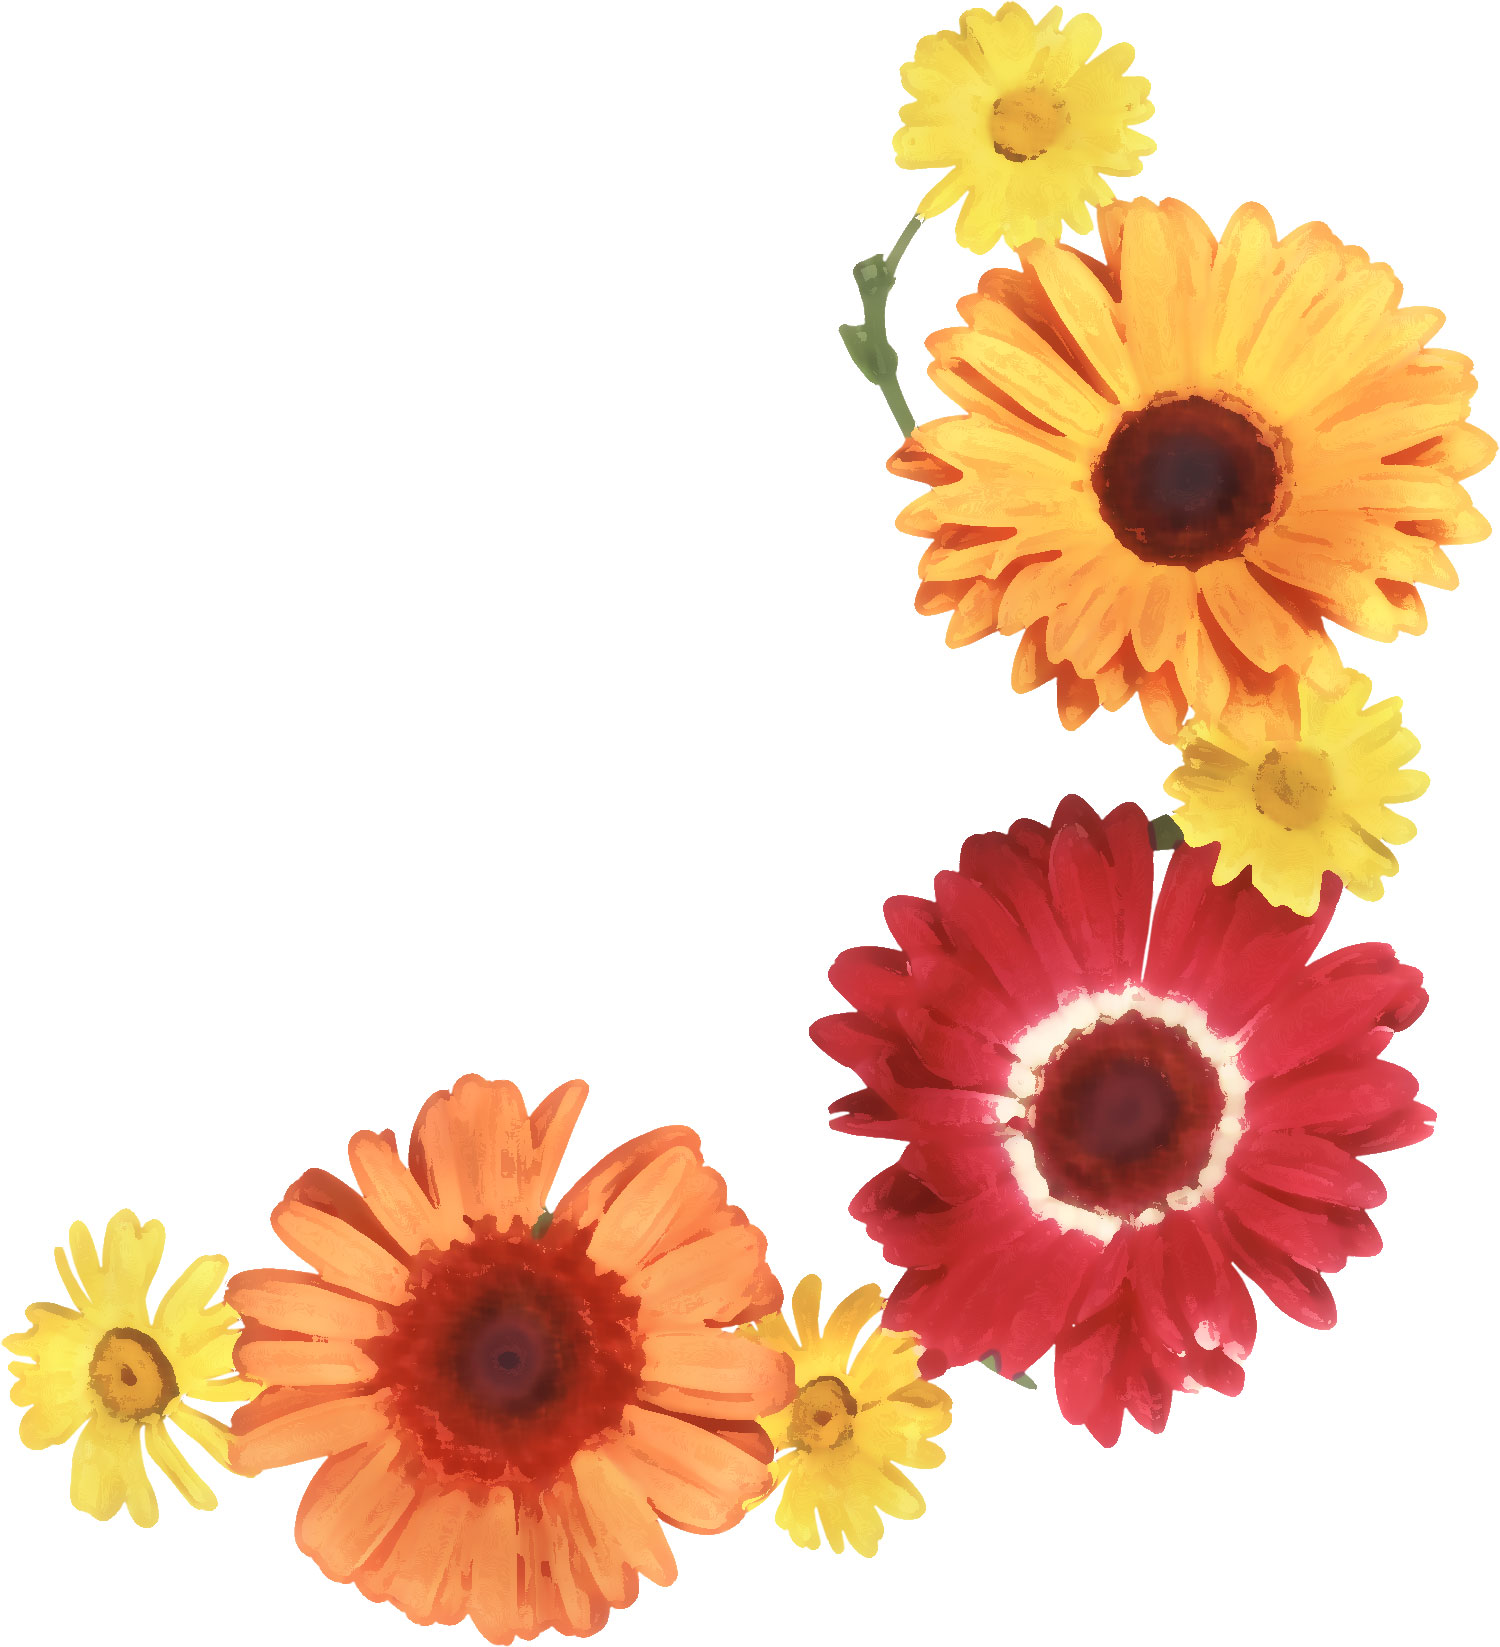 リアルな花のイラスト フリー素材 角 コーナー用no 1595 ガーベラ 赤黄オレンジ